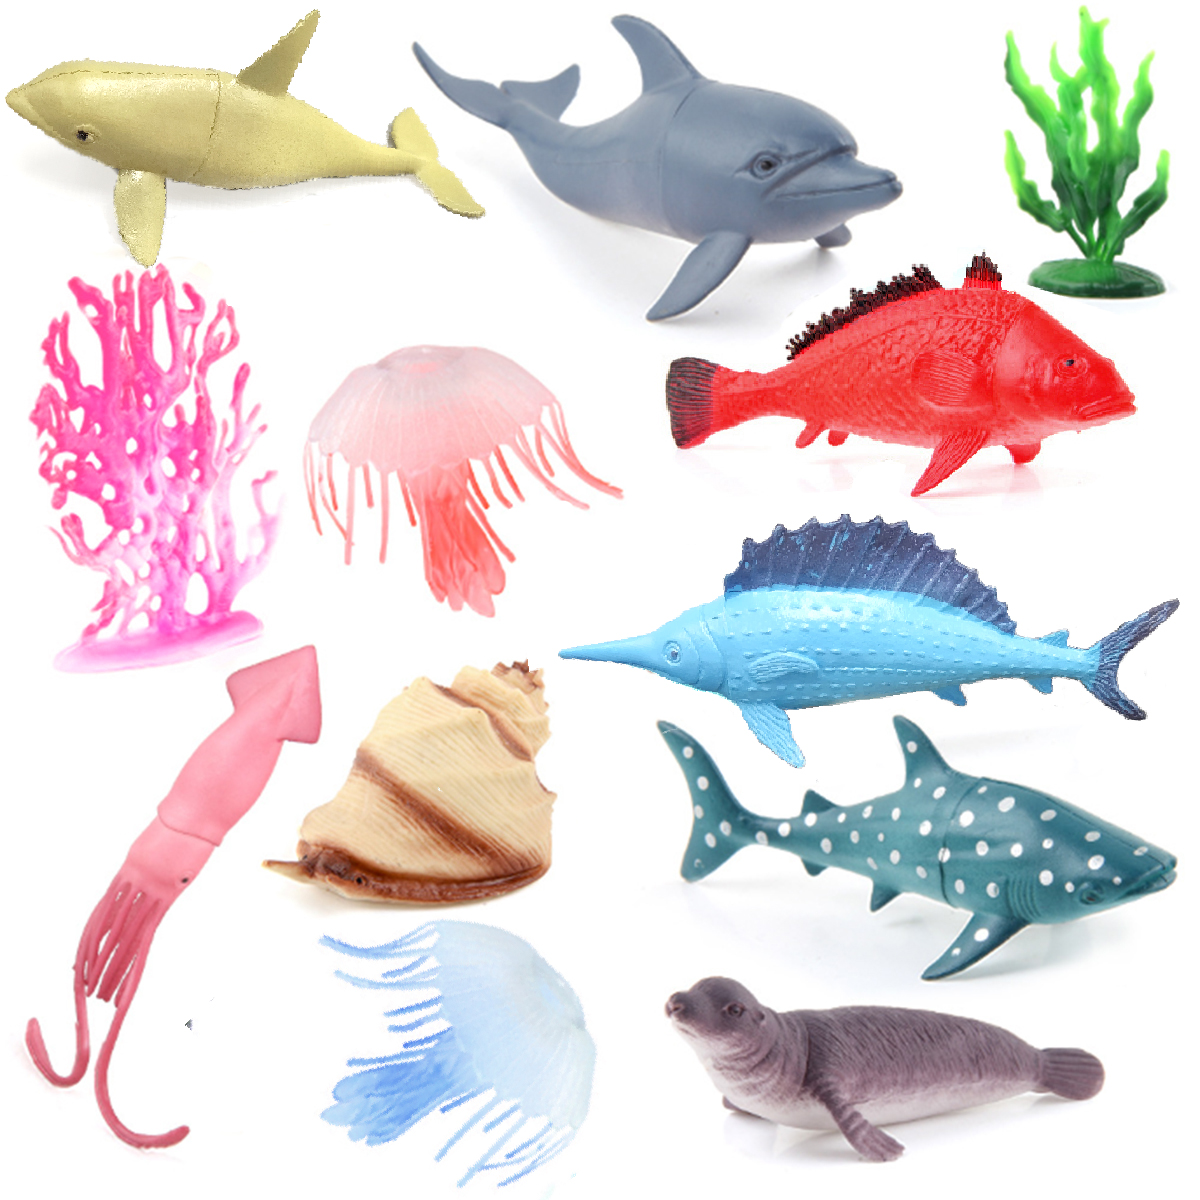 Bộ 12 đồ chơi Sinh vật Biển mẫu 2 Ốc Mực Hải Cẩu Cá Mập Cá Heo Ocean World Fish nhựa dẻo 12 chi tiết cho bé mang đi biển, đi tắm hồ bơi